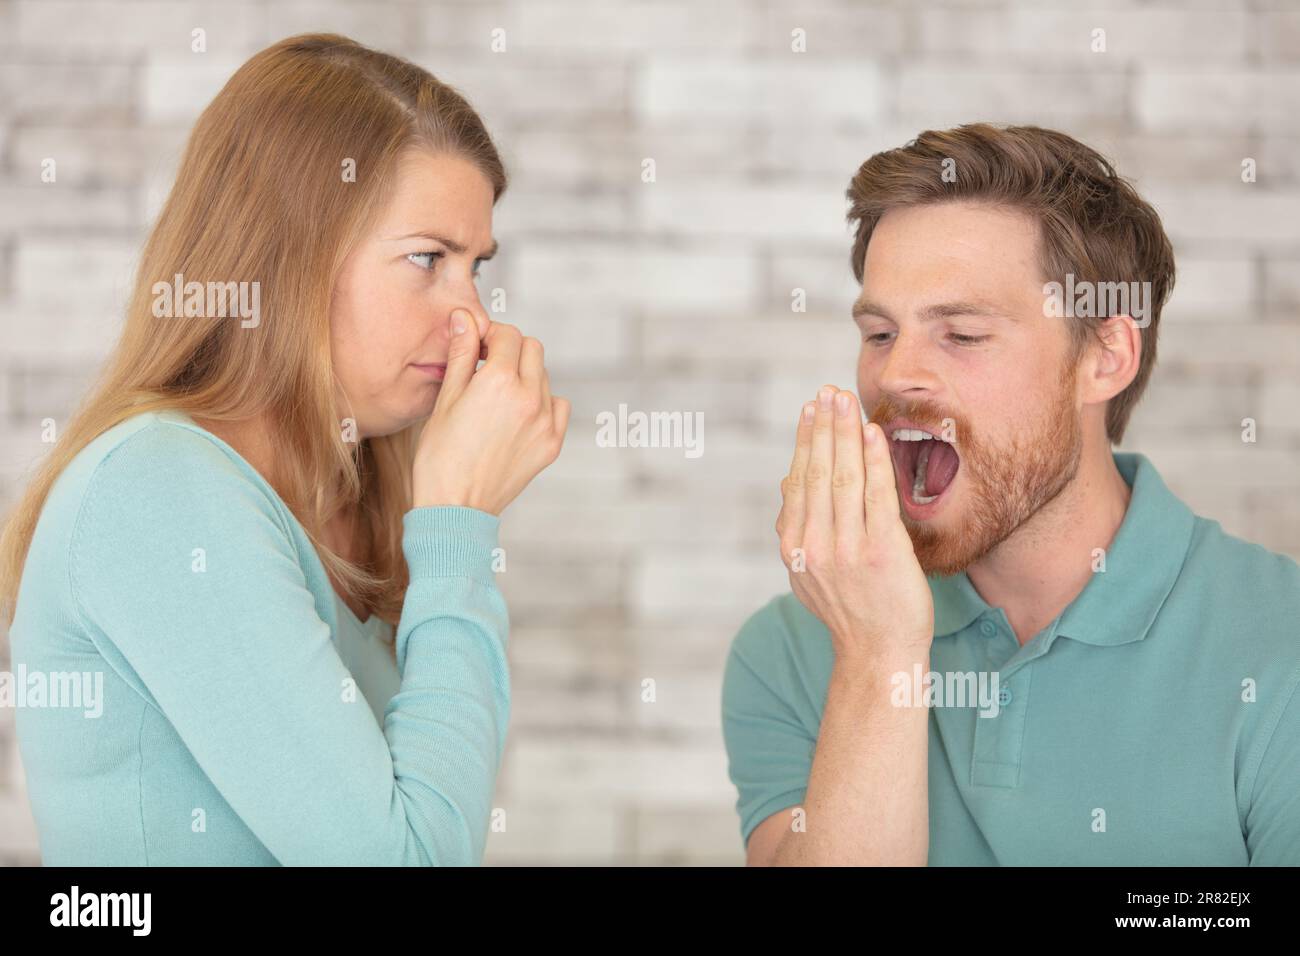 puzzolente gesturante maschio e femmina che sbadigliano Foto Stock